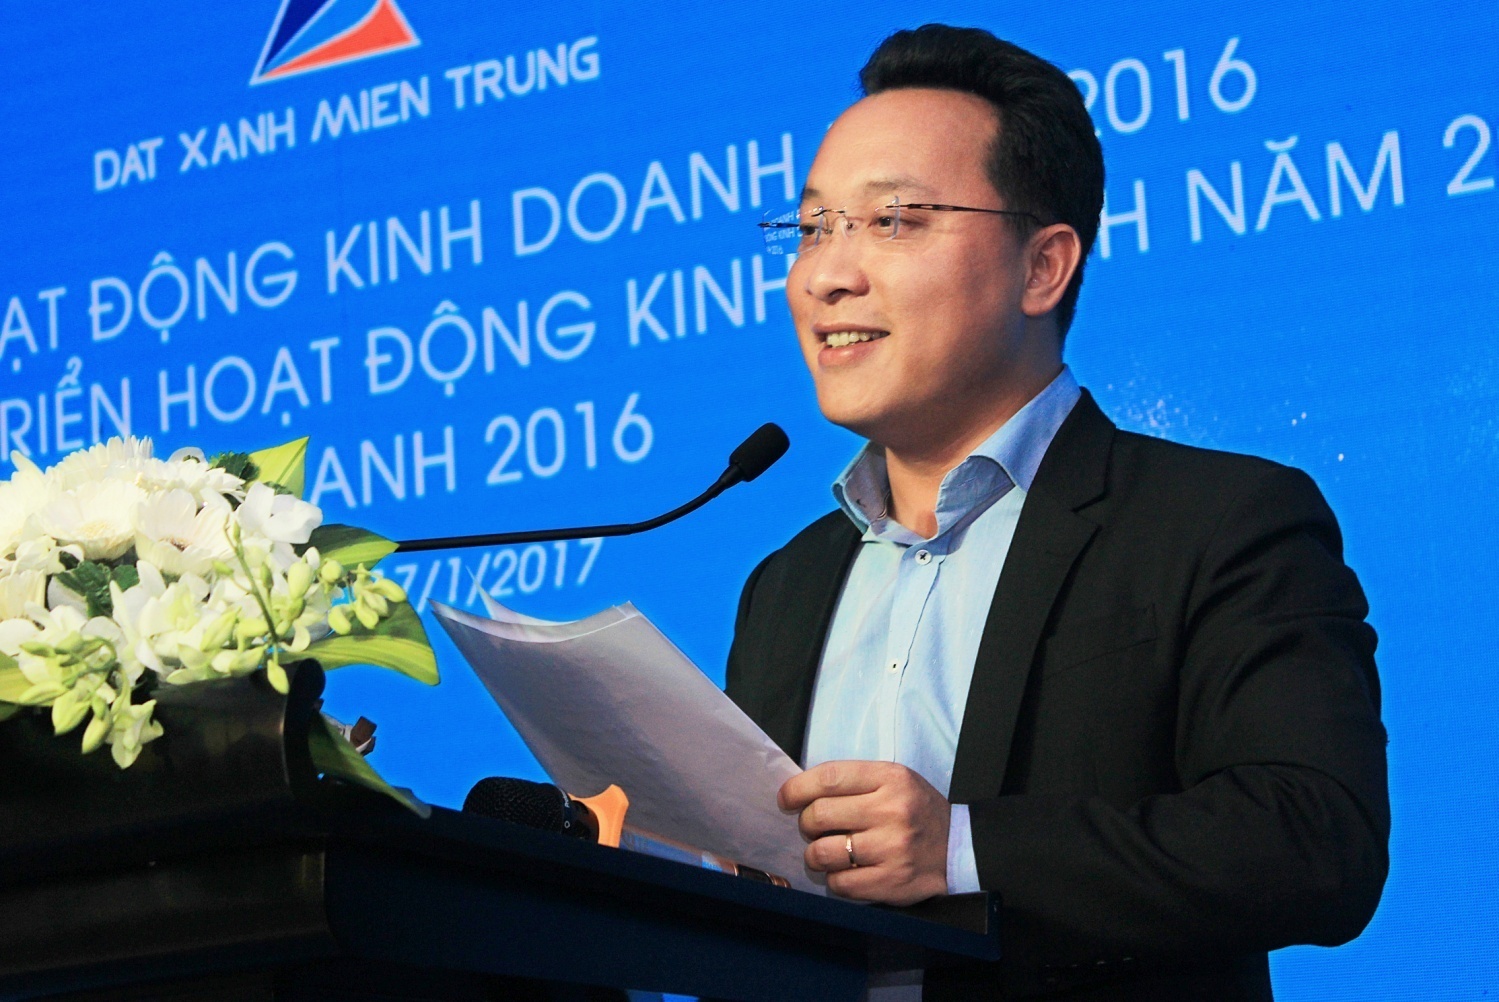 Tổng giám đốc Trần Ngọc Thành phát biểu trong Lễ tổng kết và vinh danh năm 2016 của Đất Xanh Miền Trung